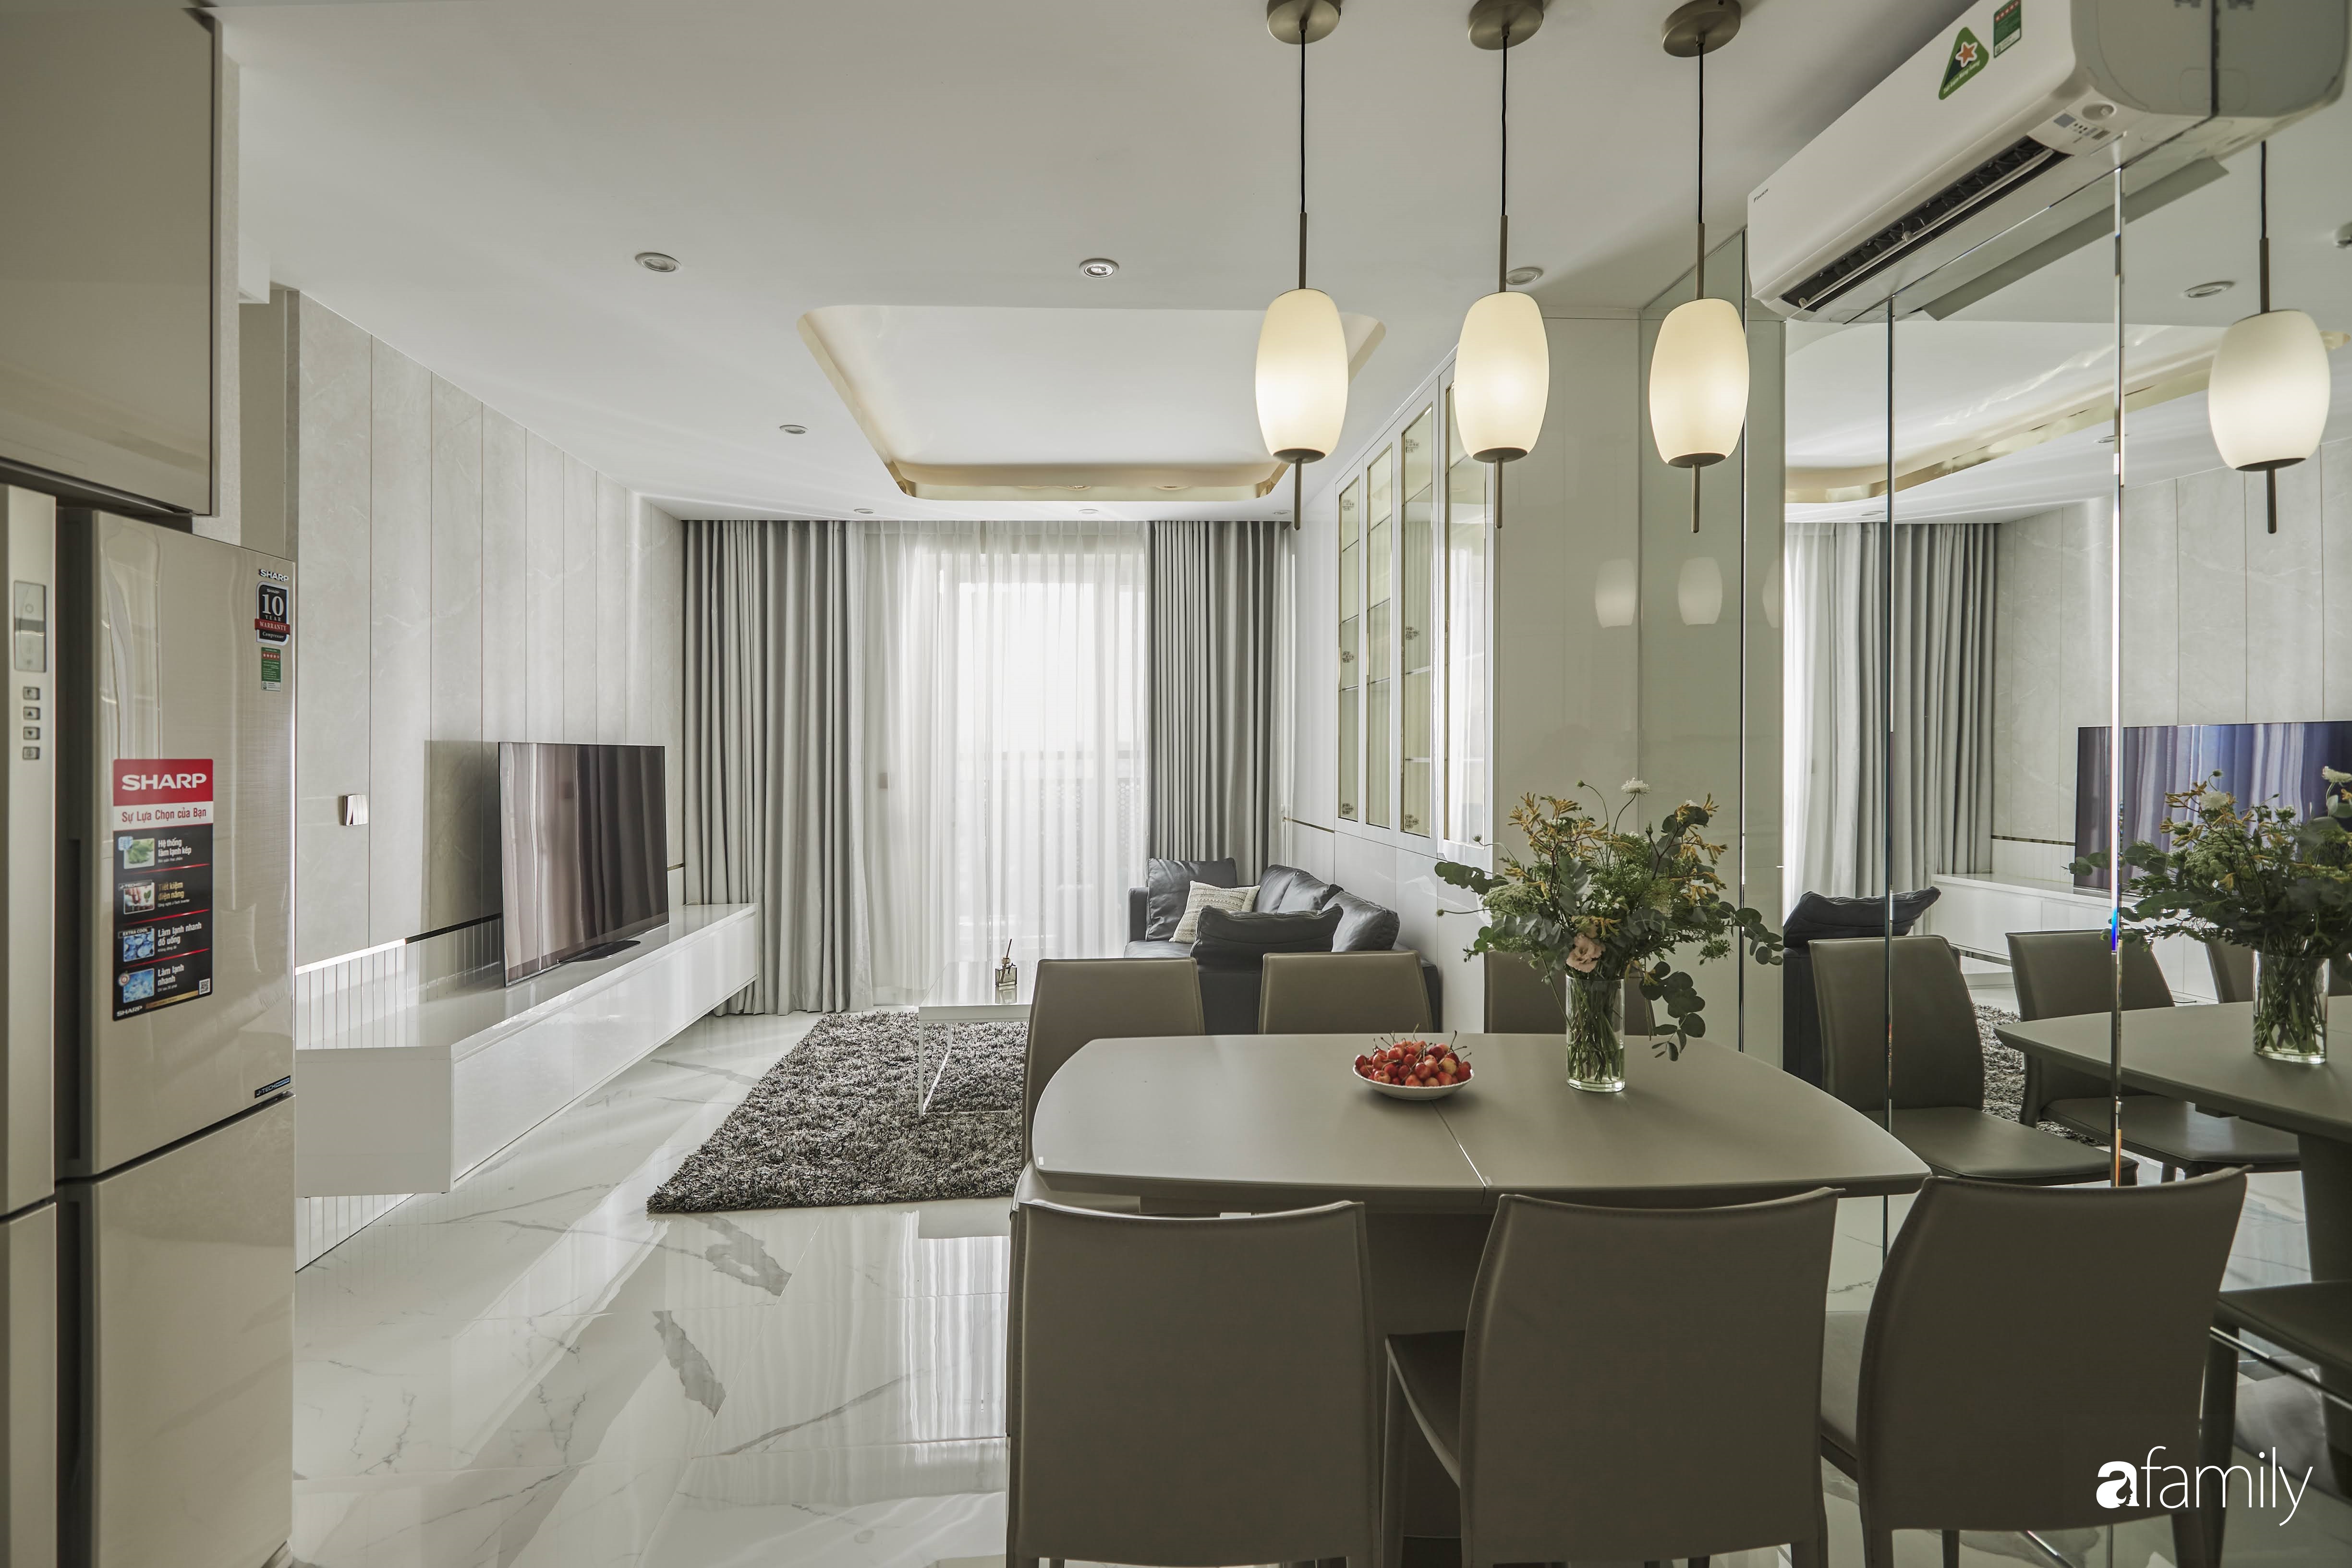 Căn hộ 85m² đẹp sang chảnh với nội thất cao cấp như khách sạn 5 sao ở TP HCM - Ảnh 6.